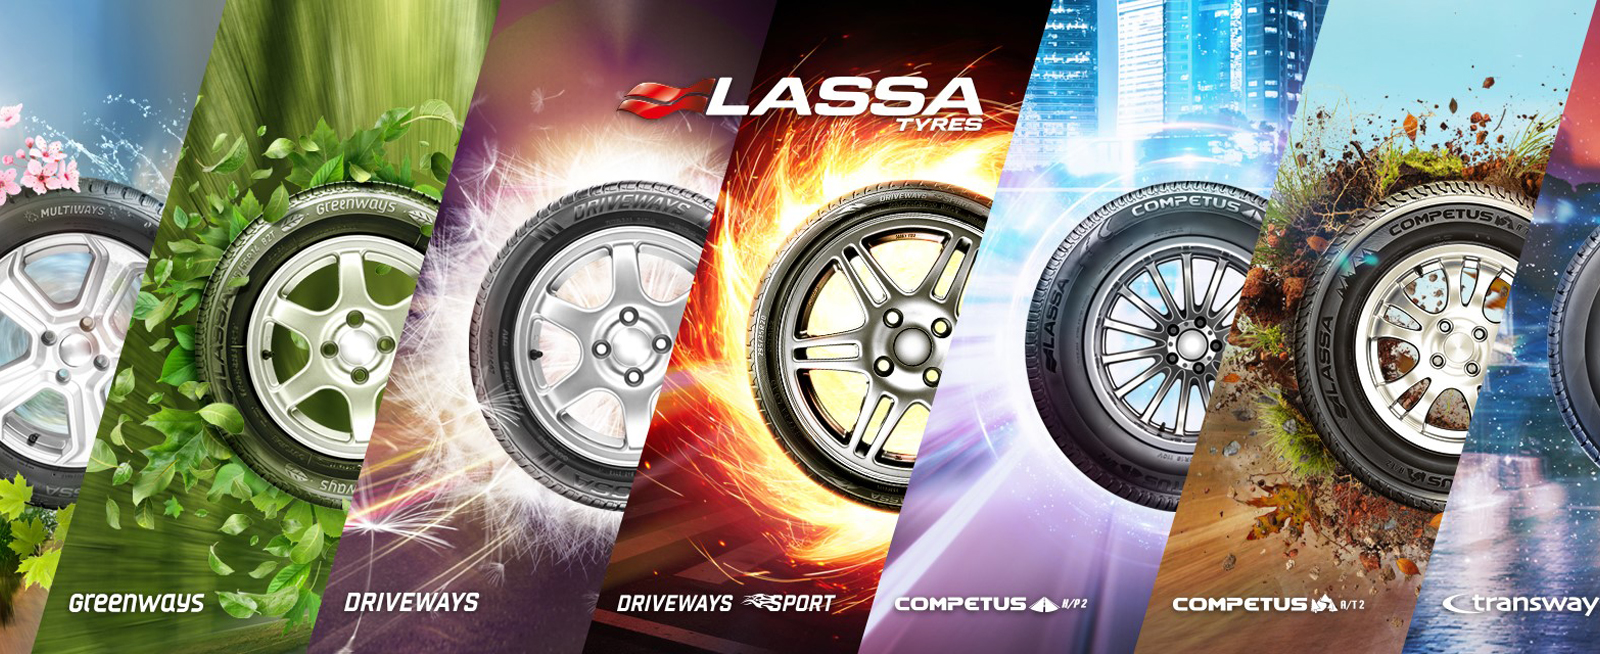 Lassa Tyres Product Range